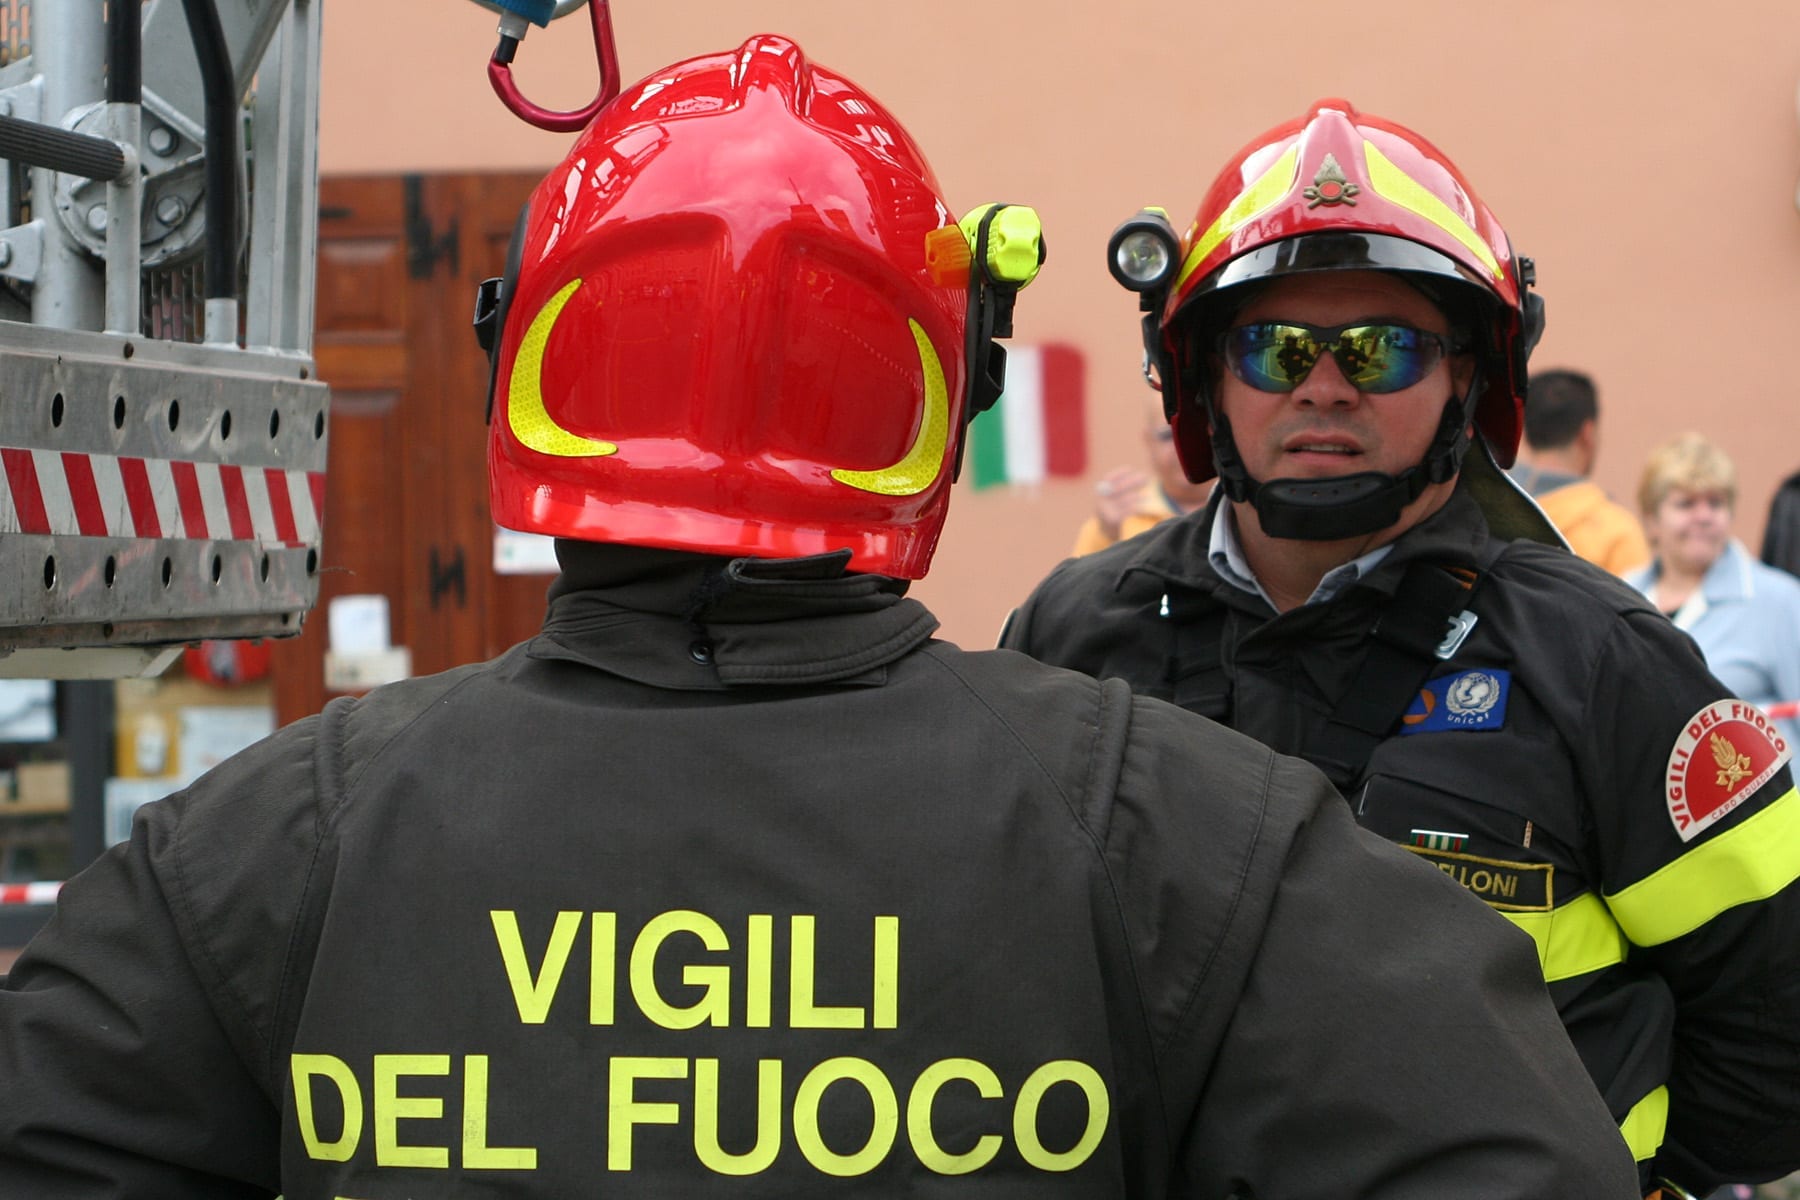 Vigili del fuoco italia